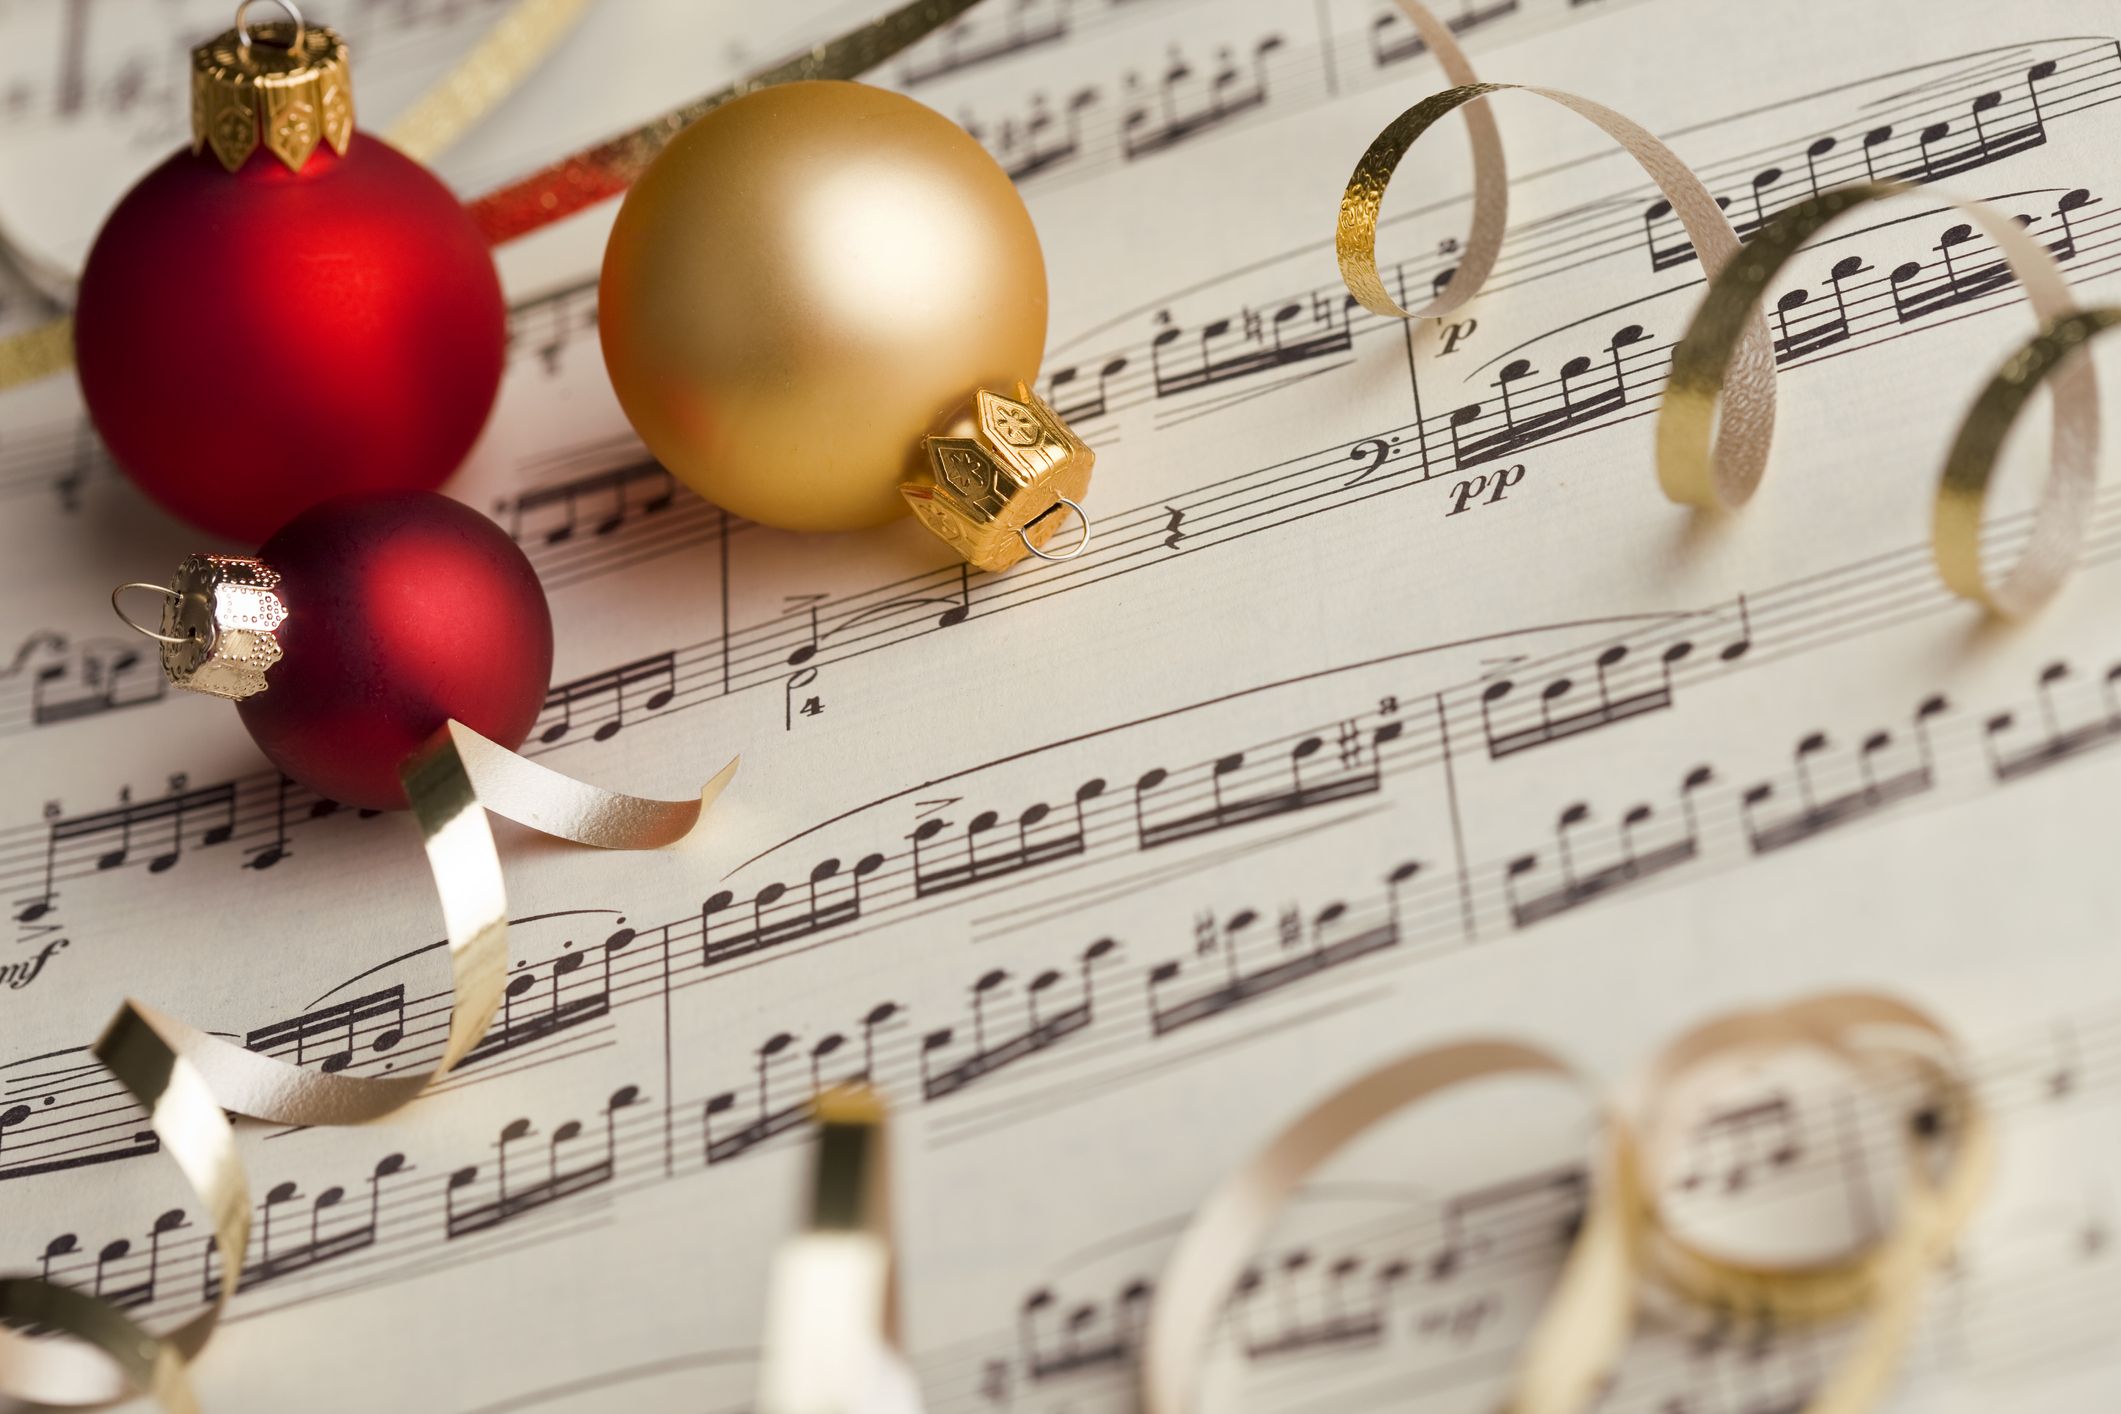 Tất cả những gì bạn cần để bắt đầu một bữa tiệc Giáng sinh hoàn hảo là một danh sách phát nhạc đầy đủ các bài hát phù hợp với không khí lễ hội. Hãy tham khảo và lựa chọn cho mình một Christmas Playlist hoàn hảo với các bài hát quen thuộc như \